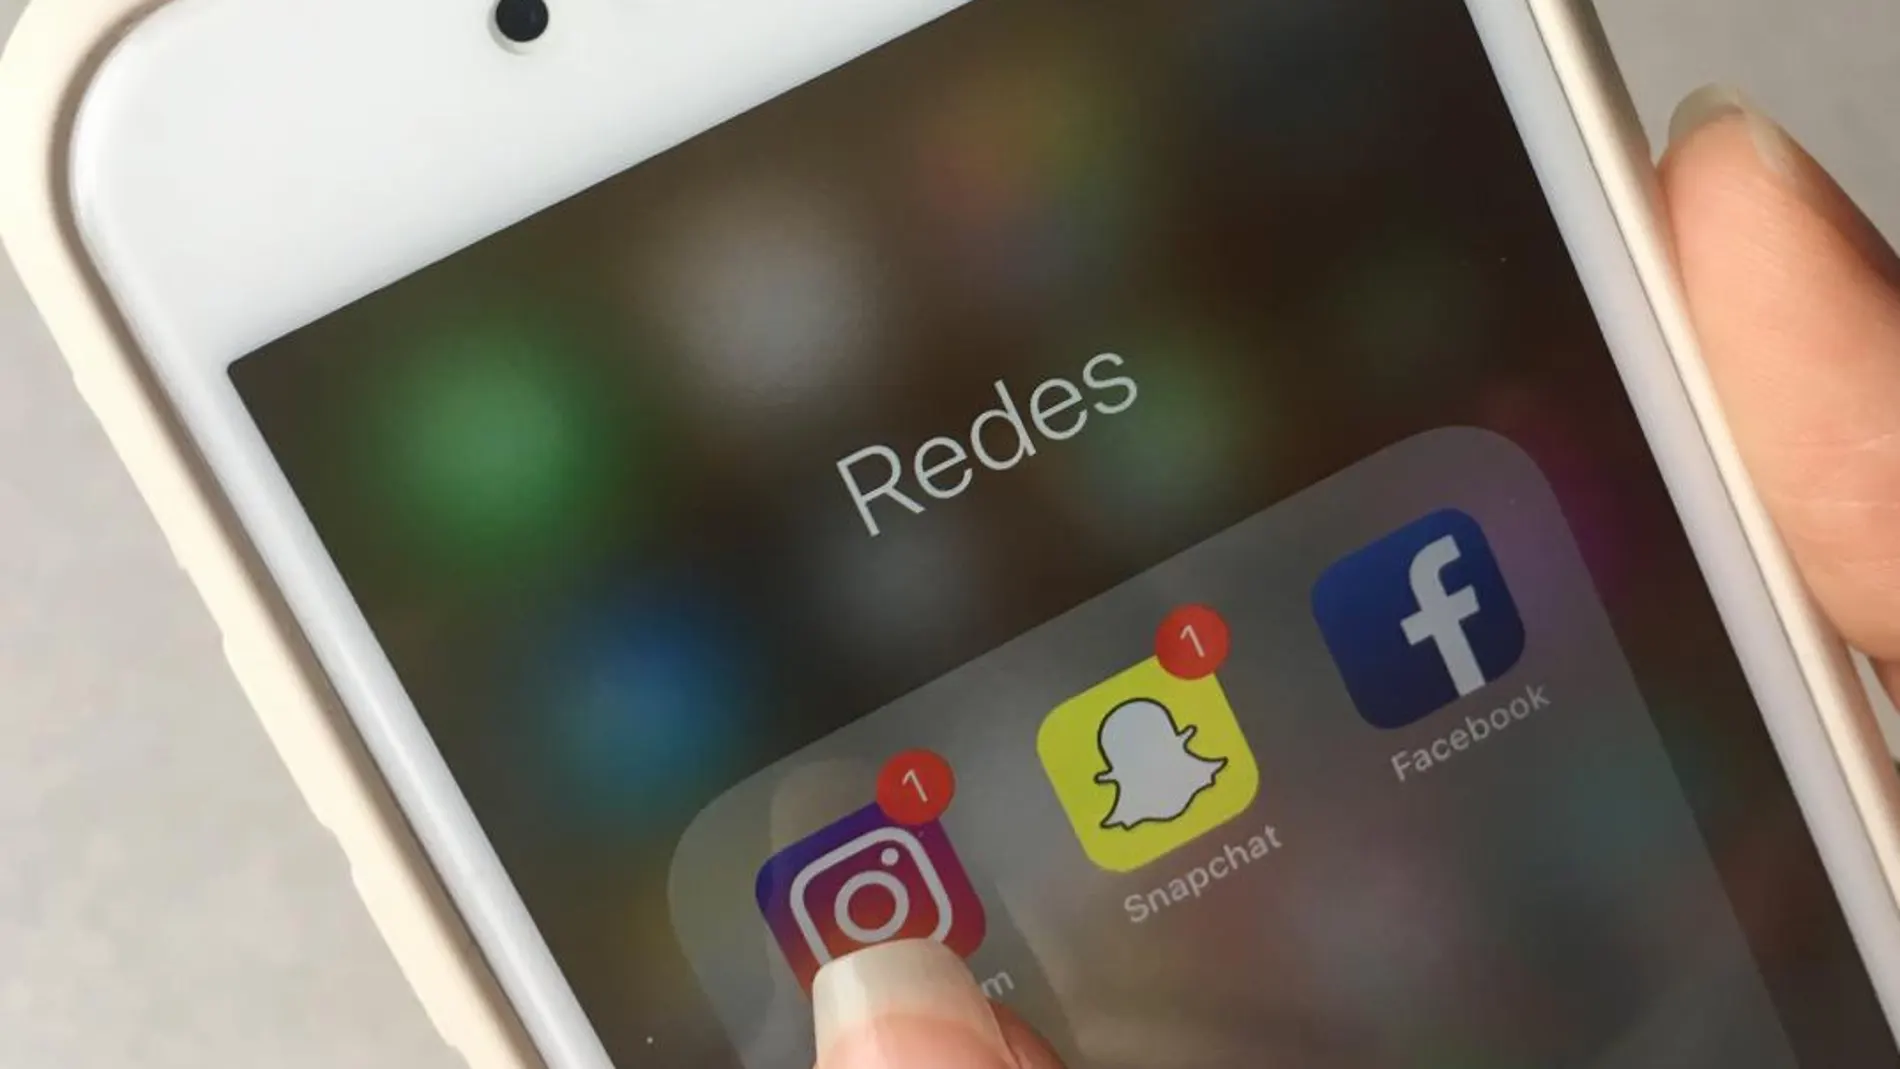 Snapchat quiere mantener sus señas de identidad frente a otras redes / Efe